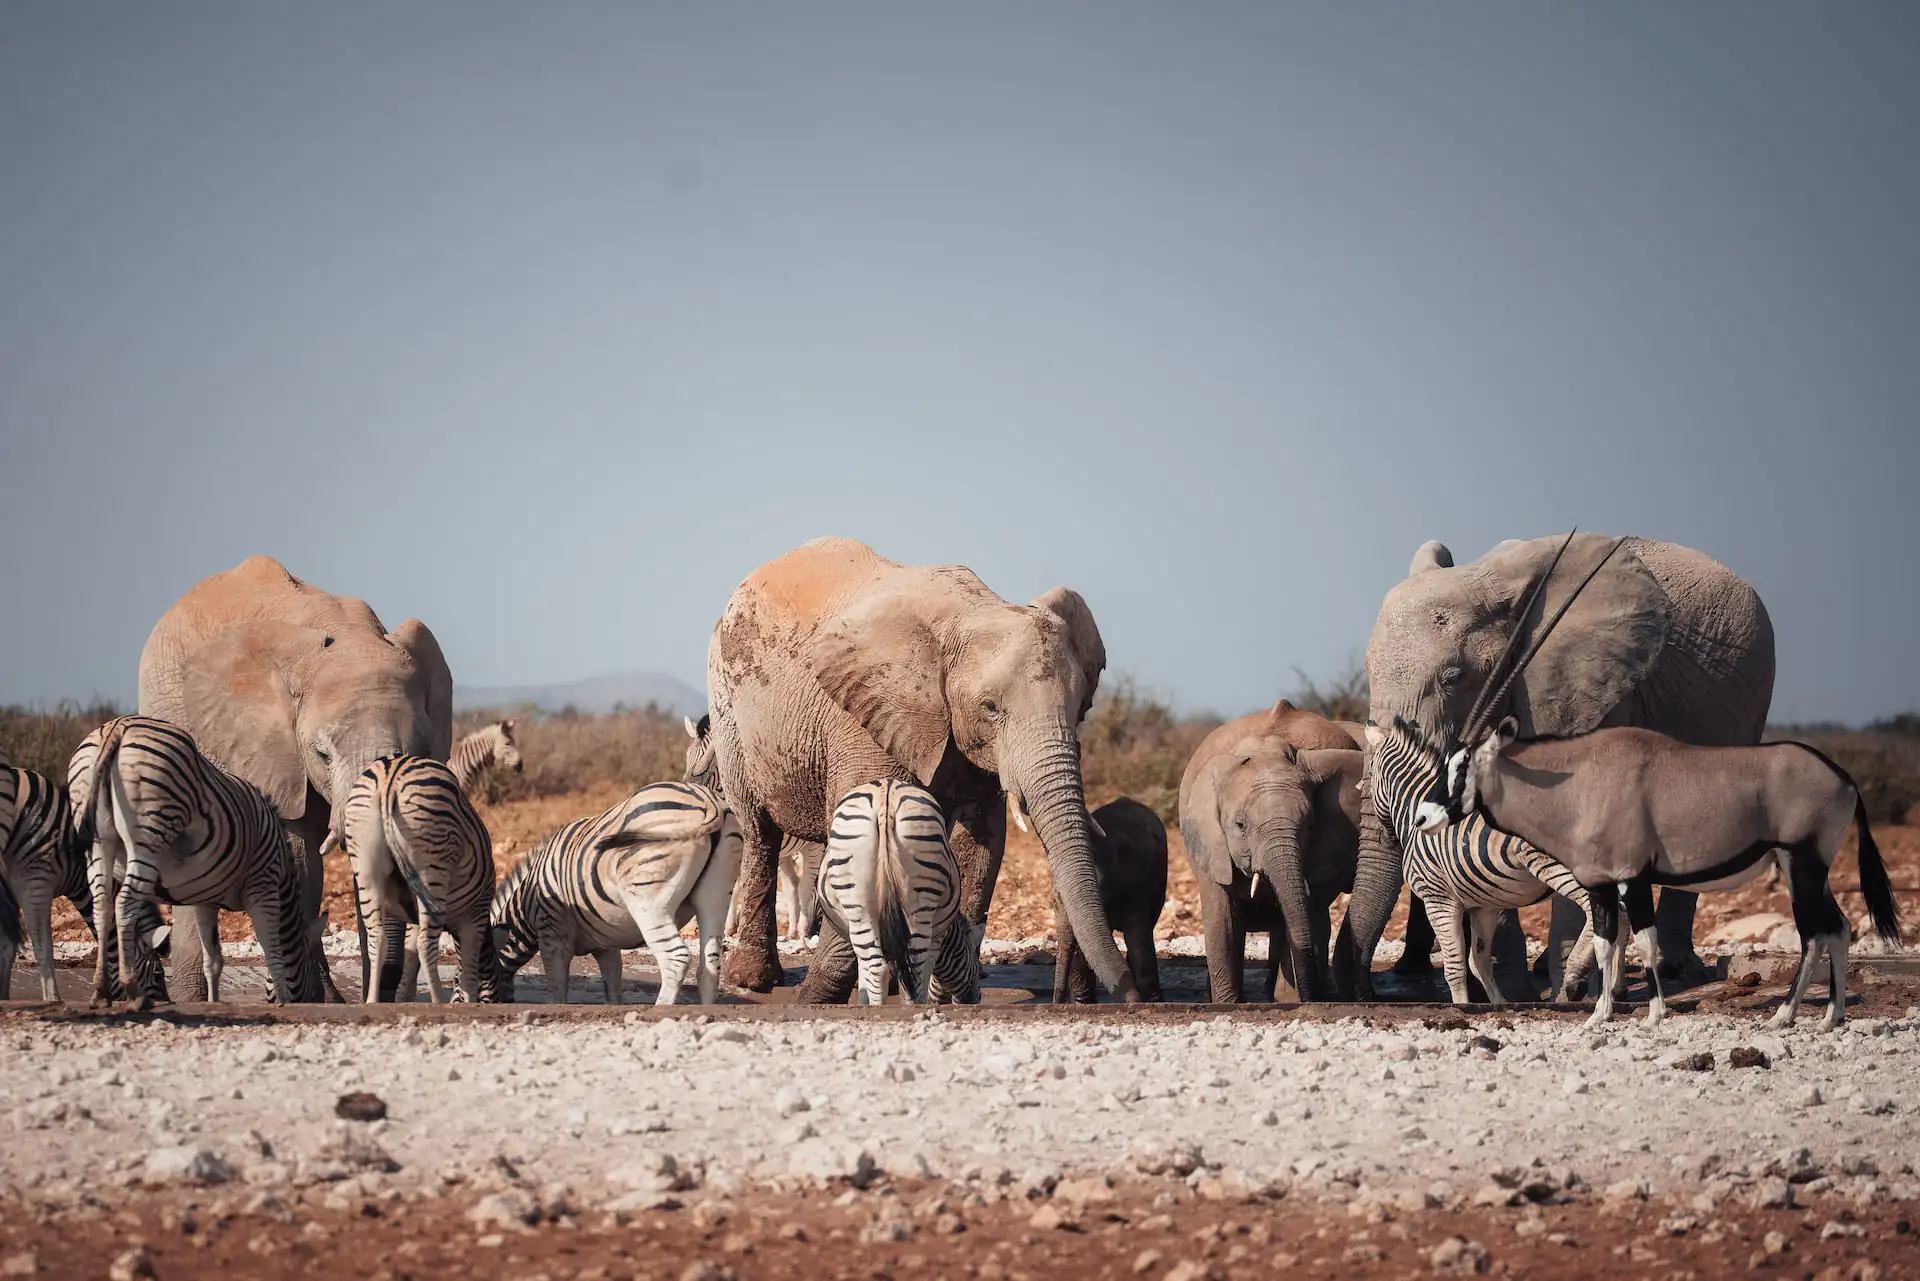 Route für deine Weltreise nach Namibia in den Nationalpark Etosha - Wasserloch mit Elefanten und Zebras